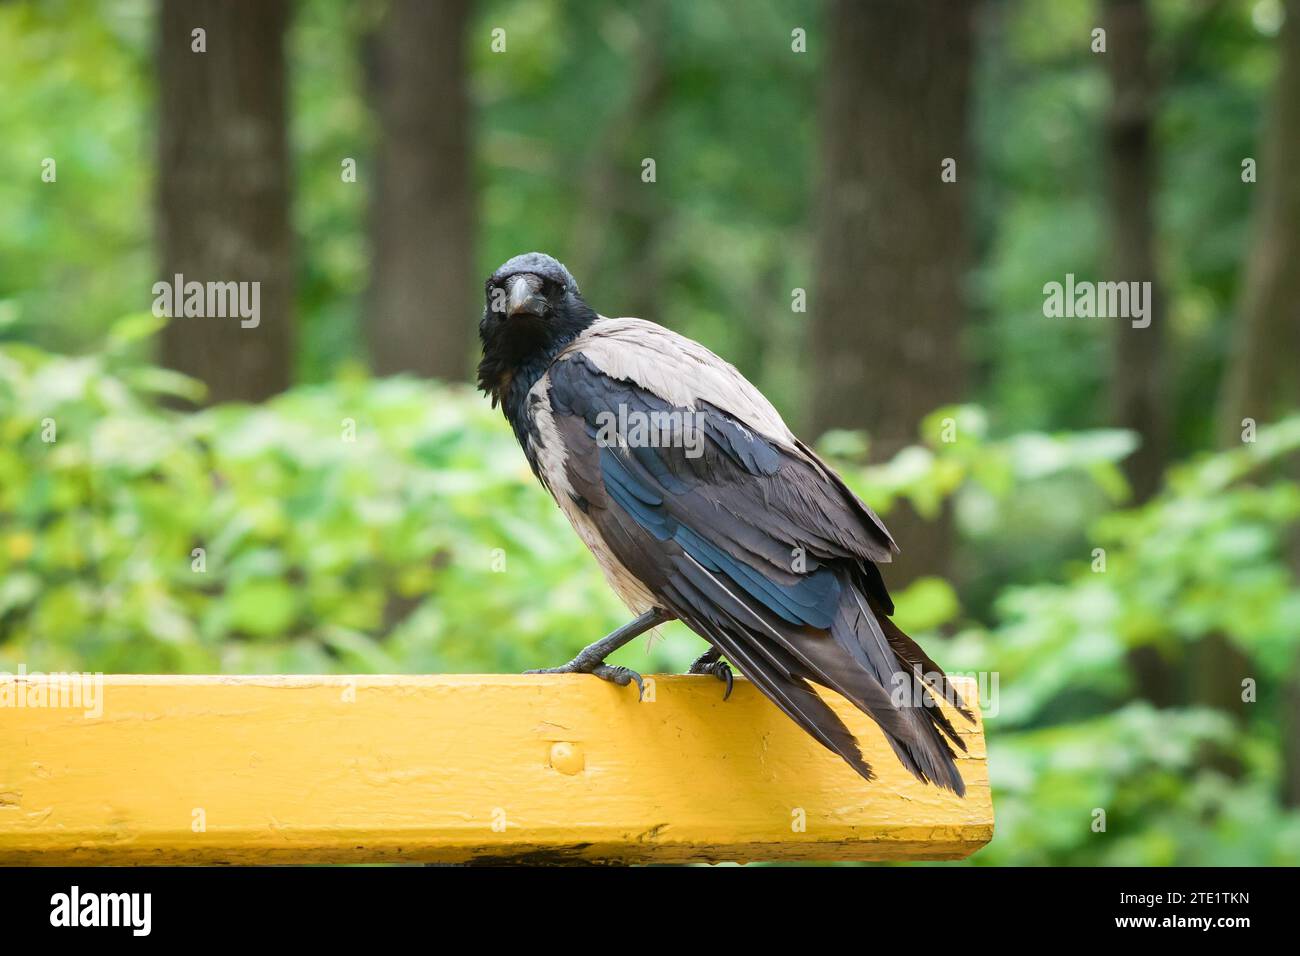 Eine Krähe sitzt auf der Rückseite einer Bank im Park und blickt direkt in die Kamera Stockfoto